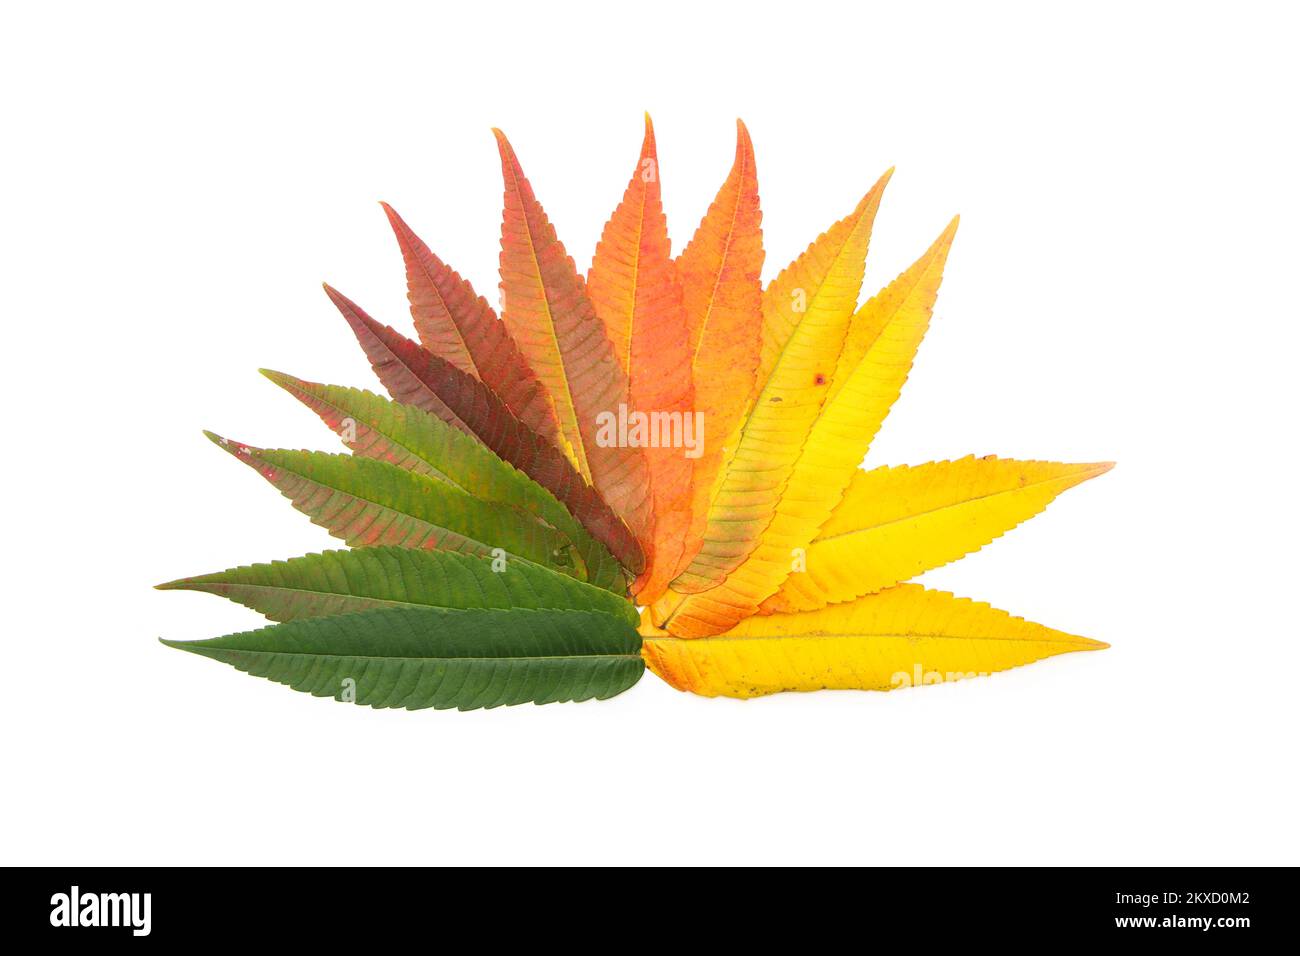 La varietà ordinata di colore bello dei fogli in uno stadio differente di cambiare il colore in autunno a causa dell'essiccazione del fogliame. Foto Stock